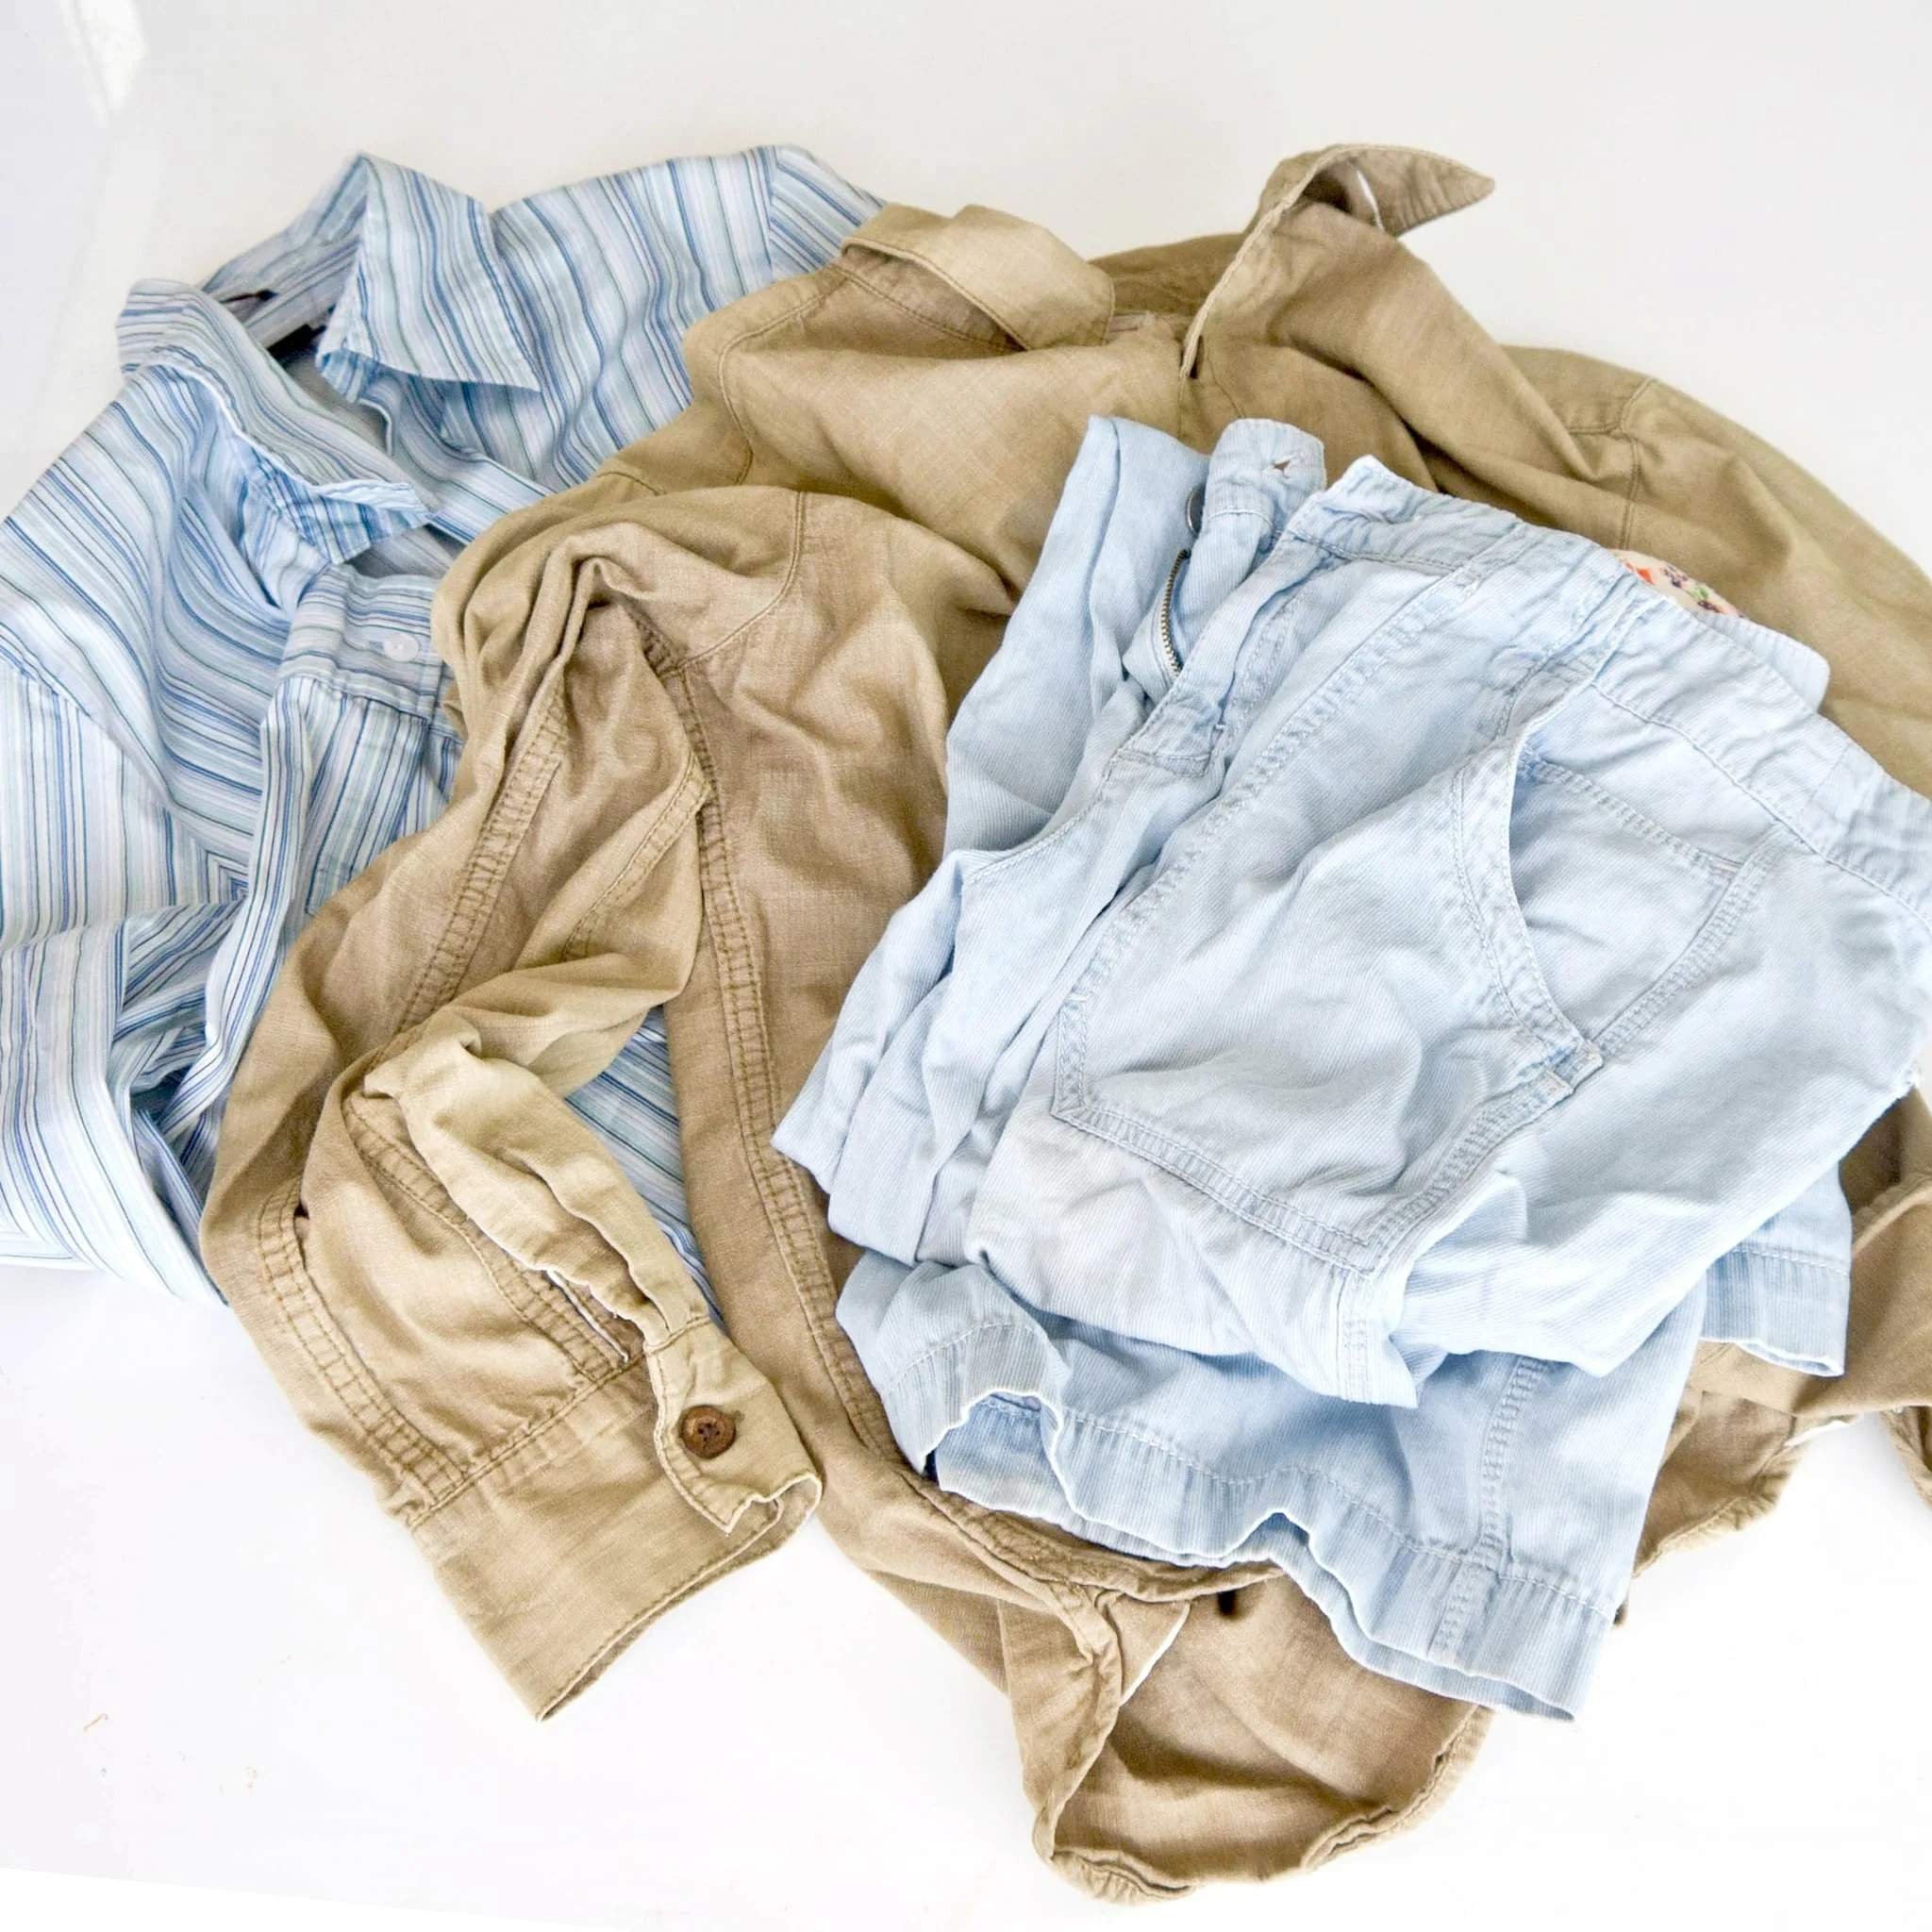 картинки грязной одежды